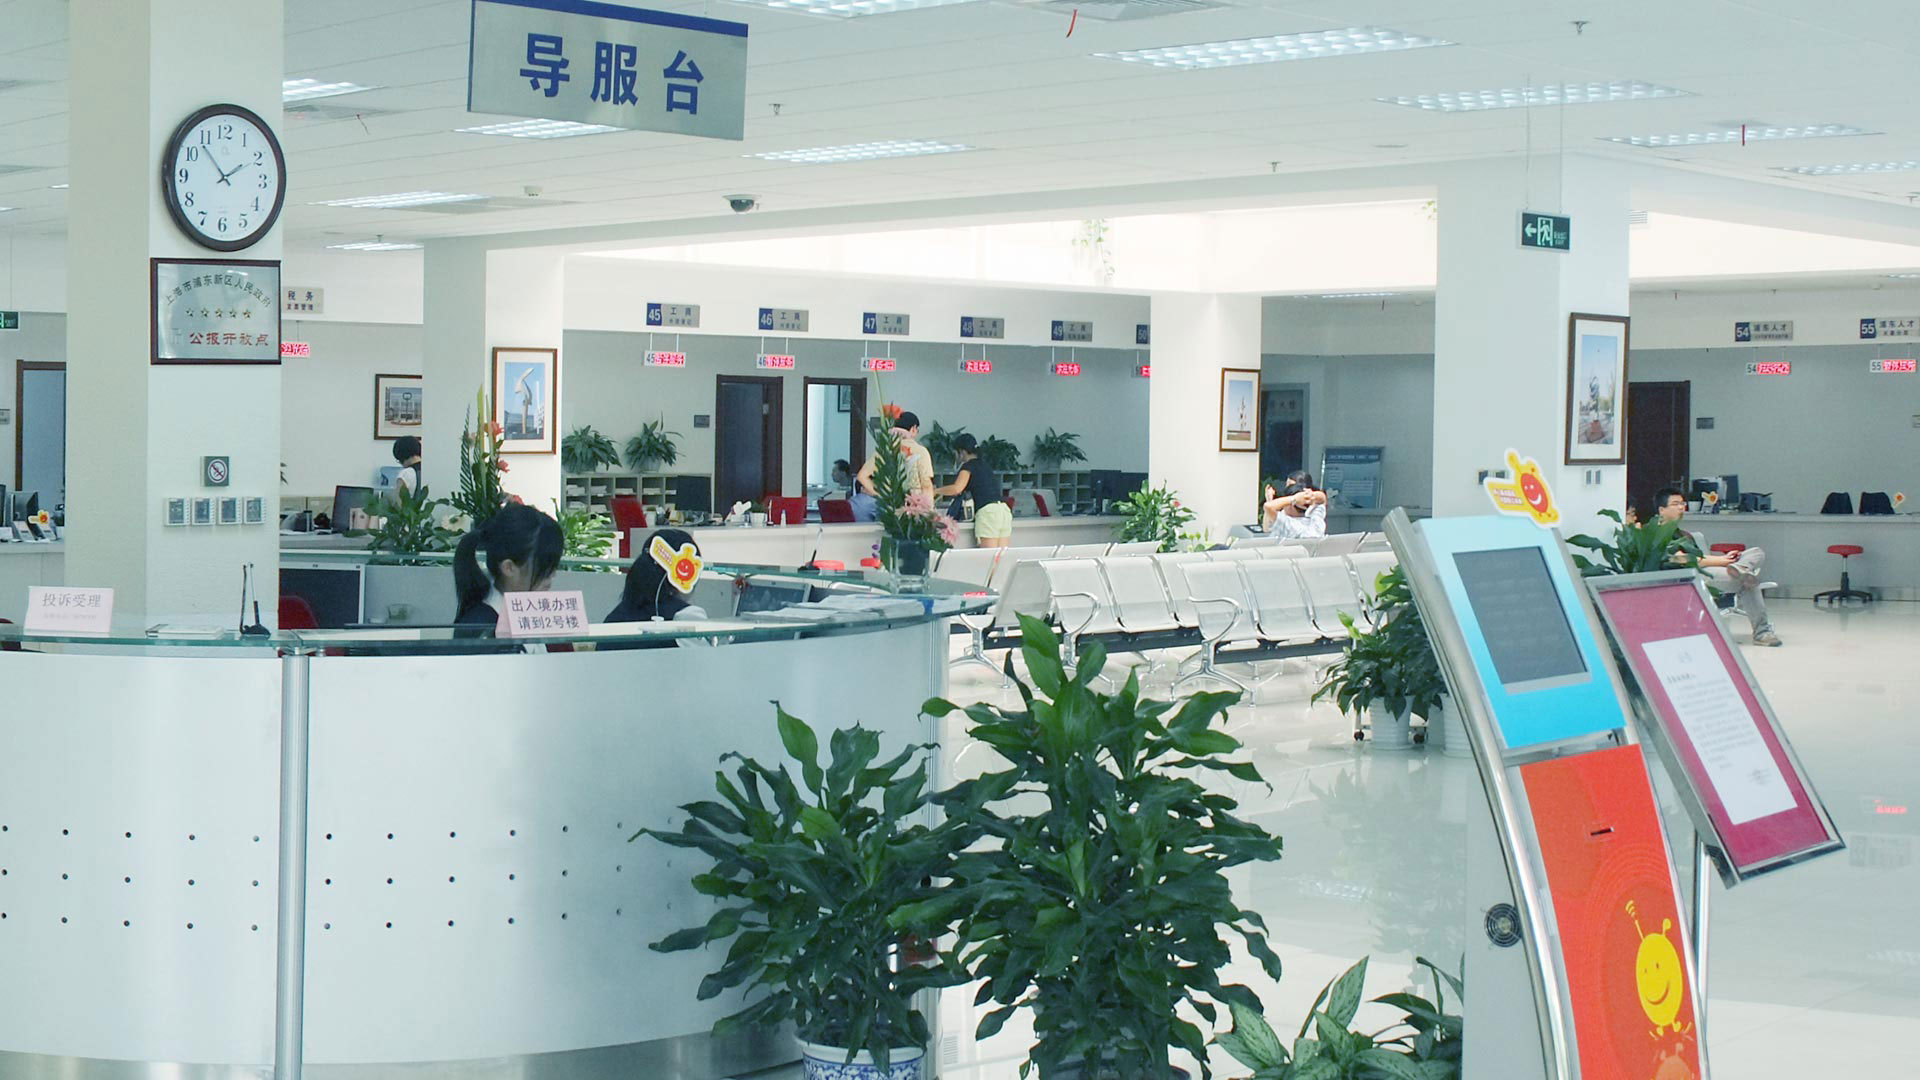 竹间对话机器人-让徐汇行政服务中心“互联网+政务服务”更美好